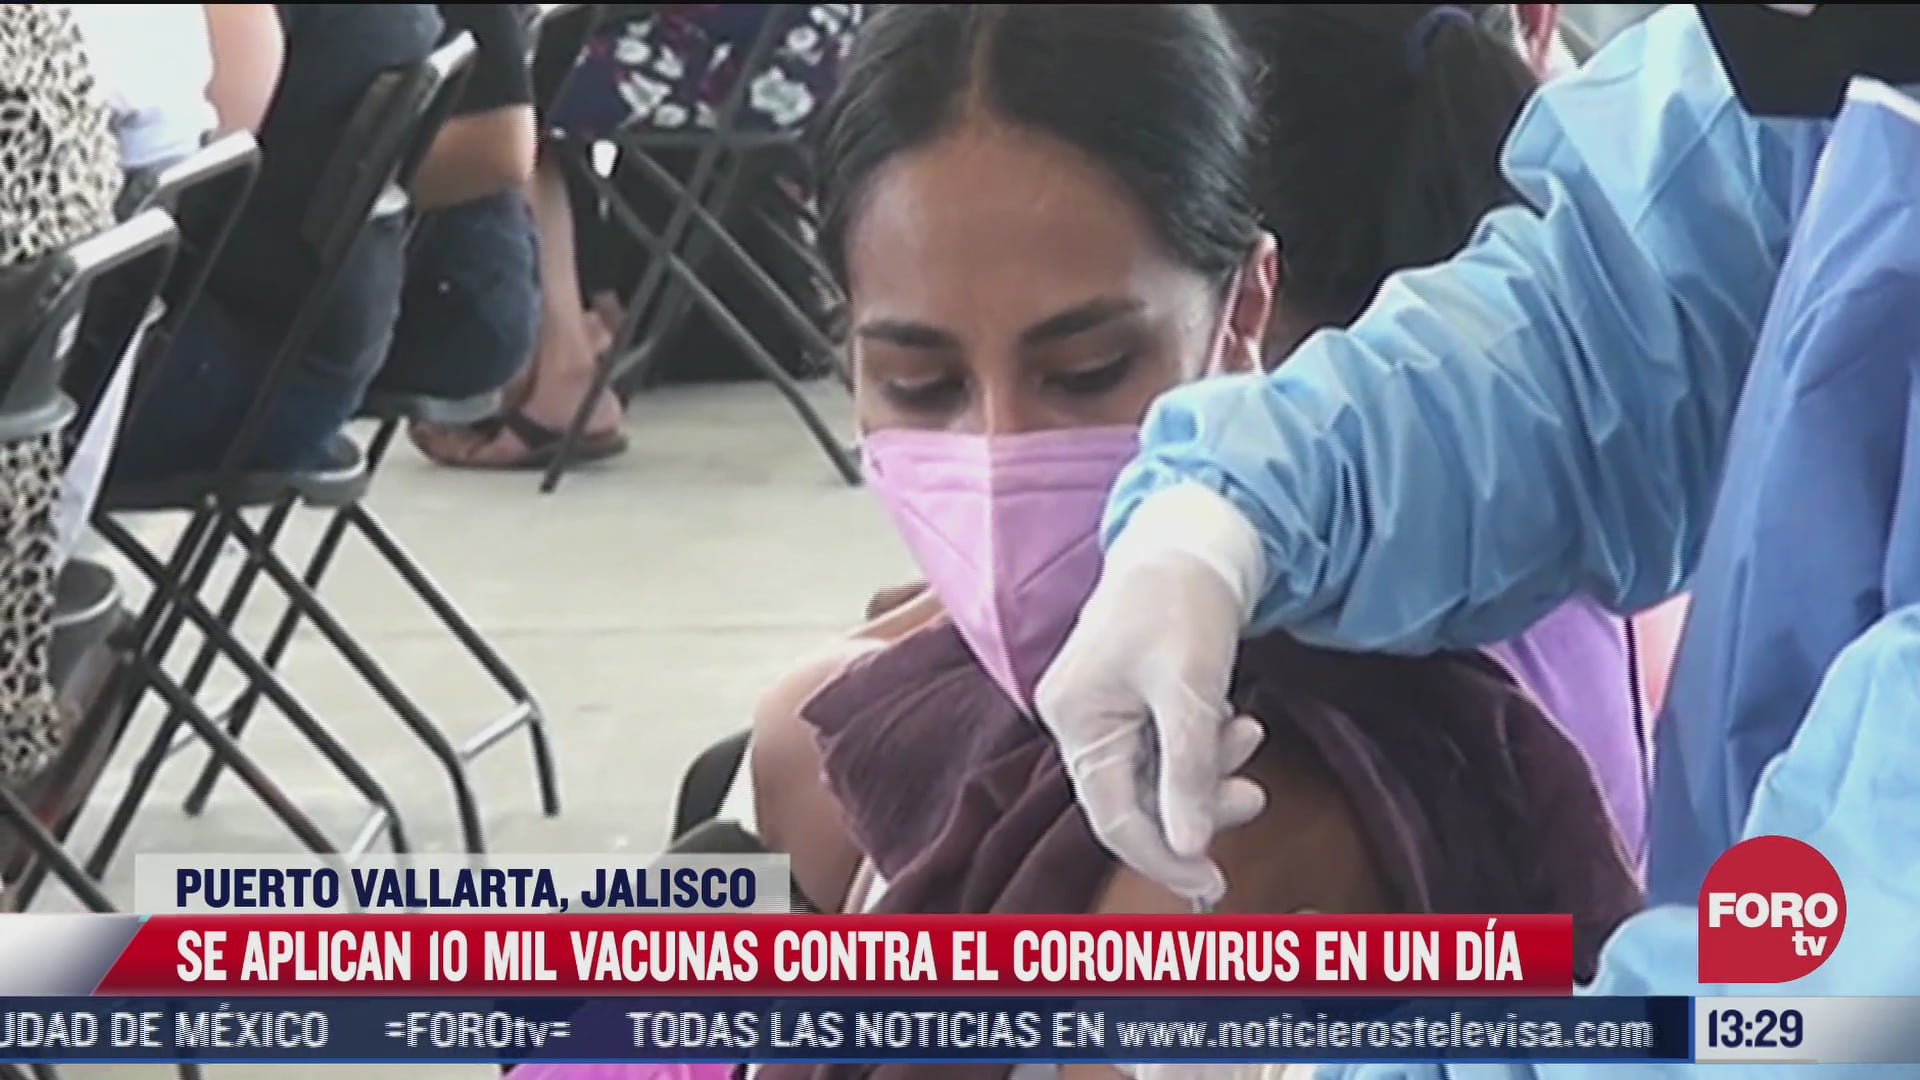 jovenes agotan vacunas en jornada de inmunizacion en puerto vallarta